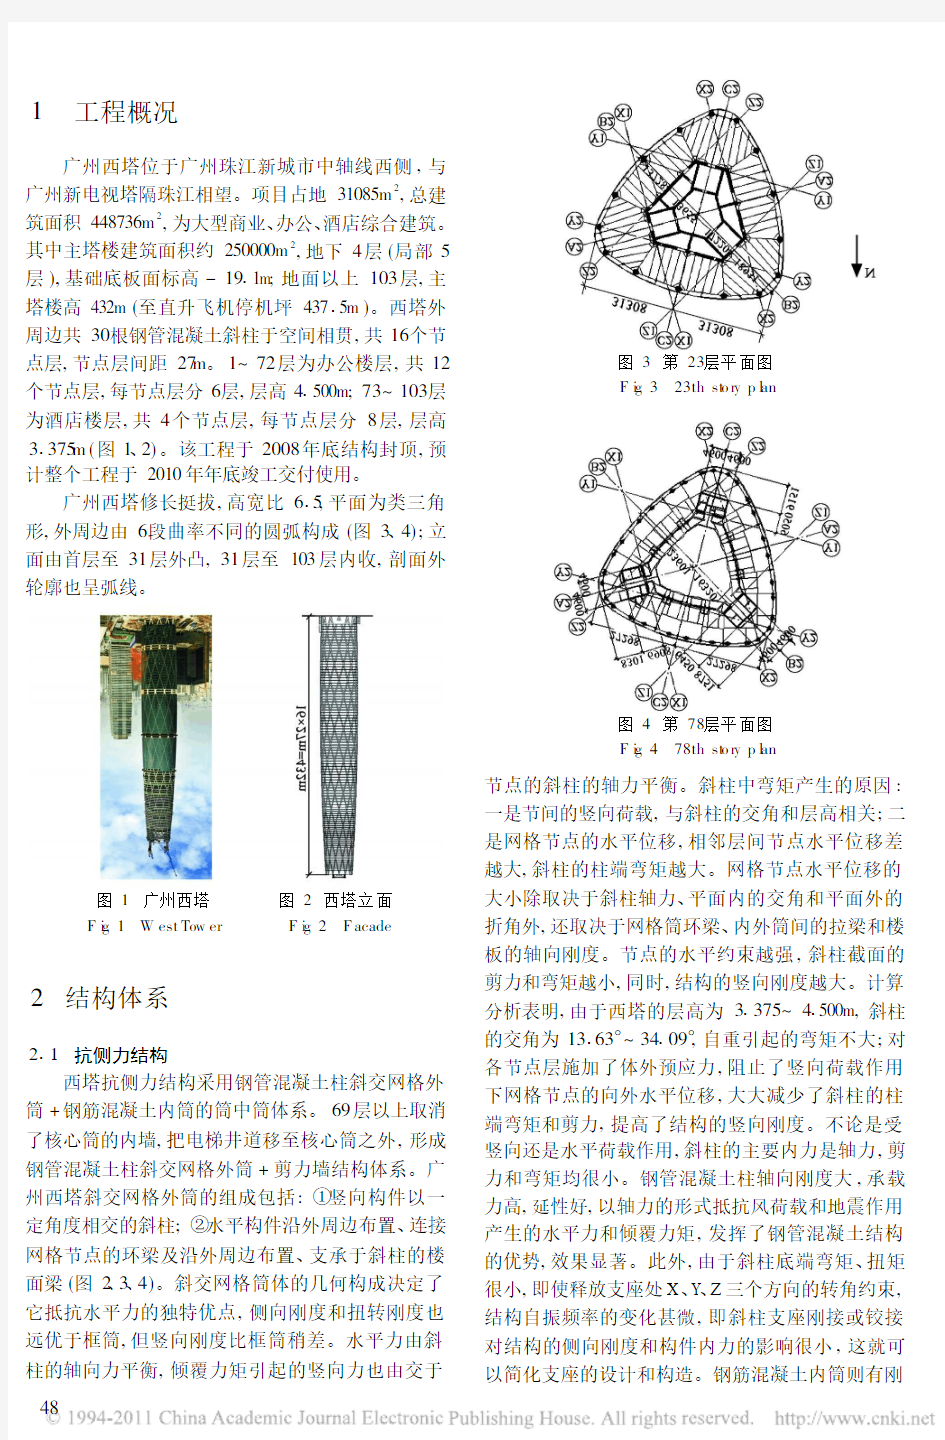 广州西塔结构抗震设计